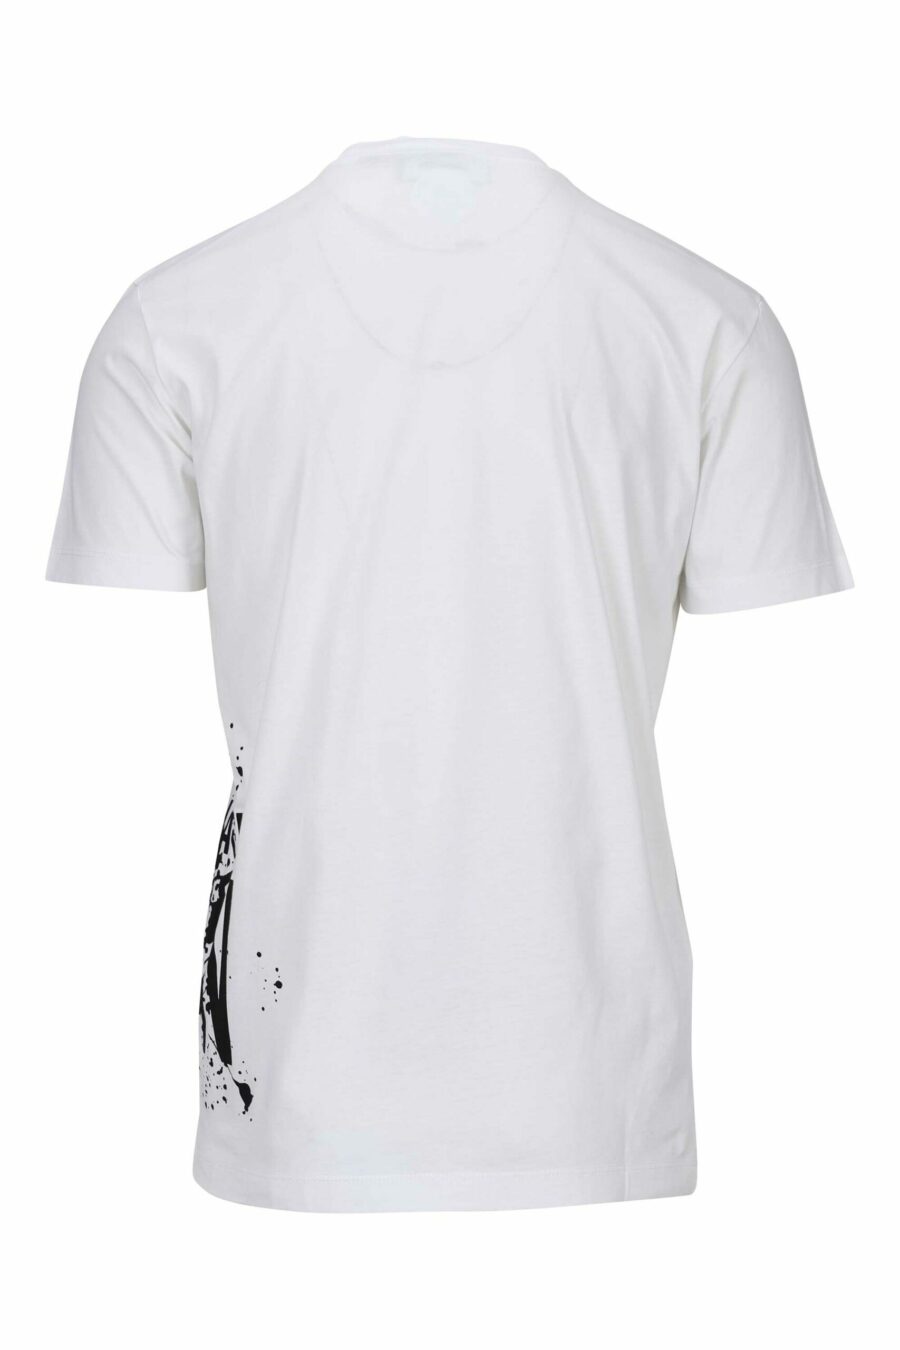 T-shirt branca com maxilogo "icon splash" por baixo - 8054148358549 1 à escala